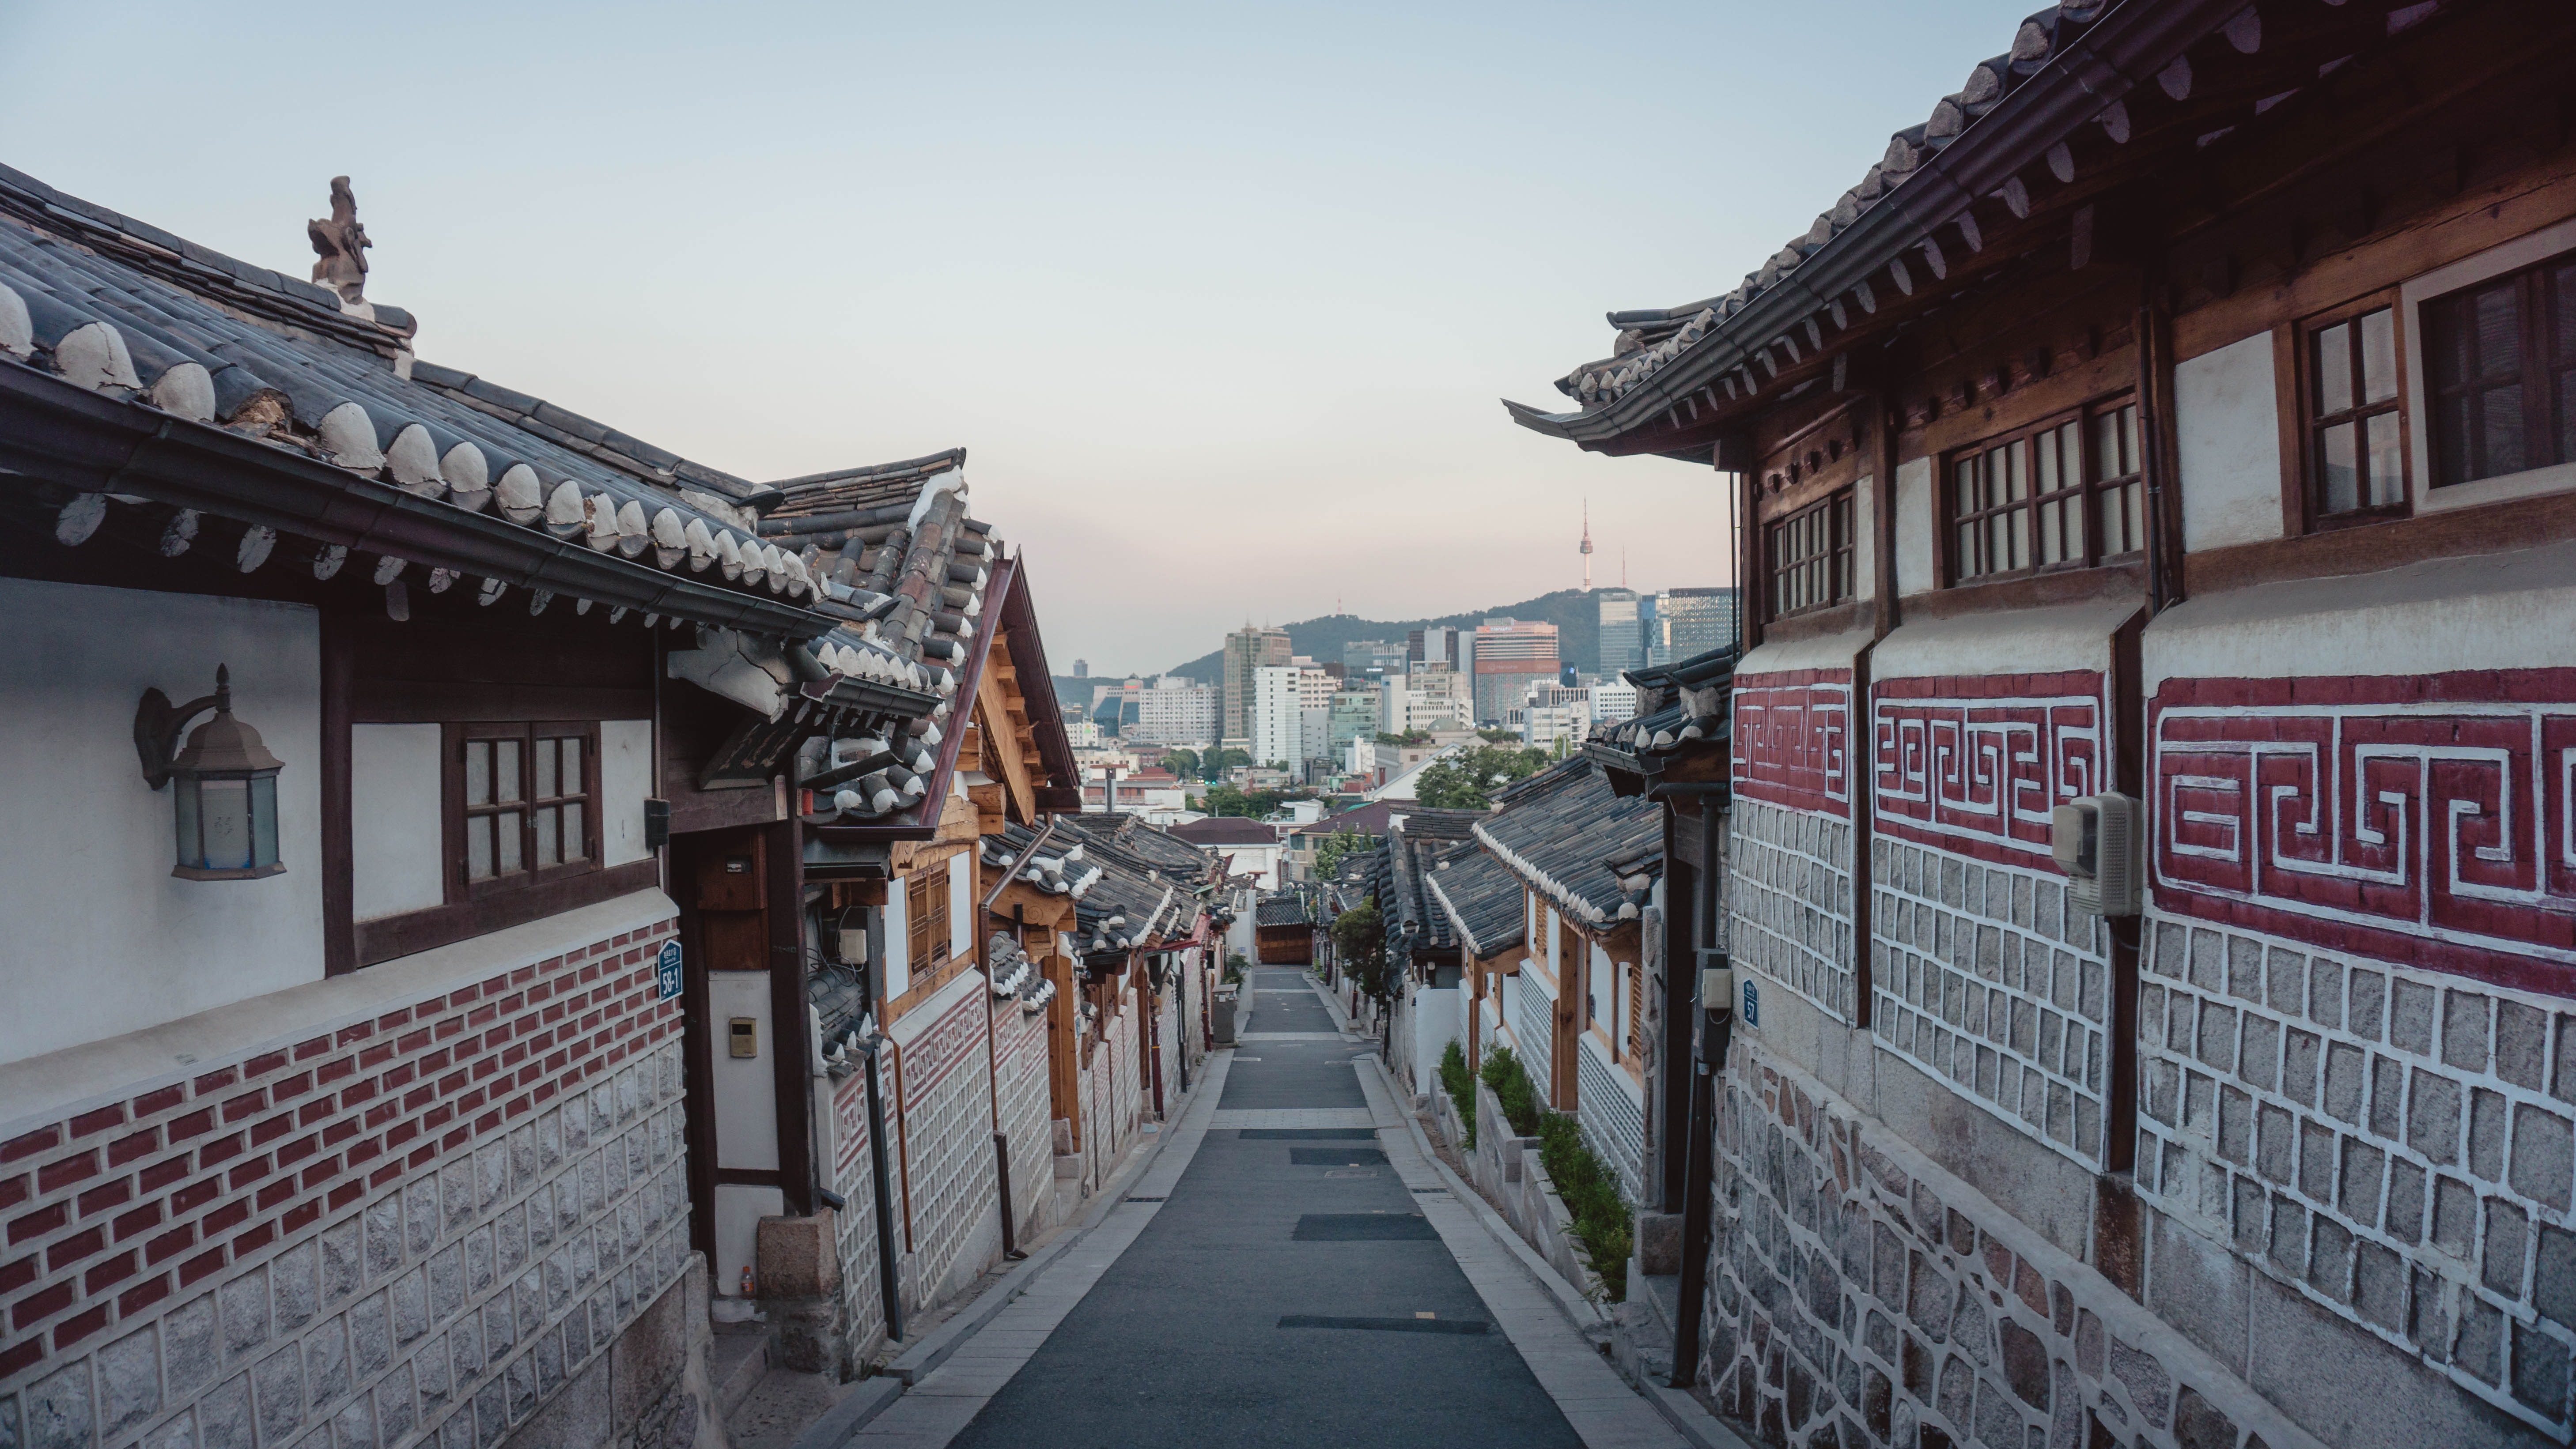 ソウル市、観光地の外国語案内表記をネイティブチェック